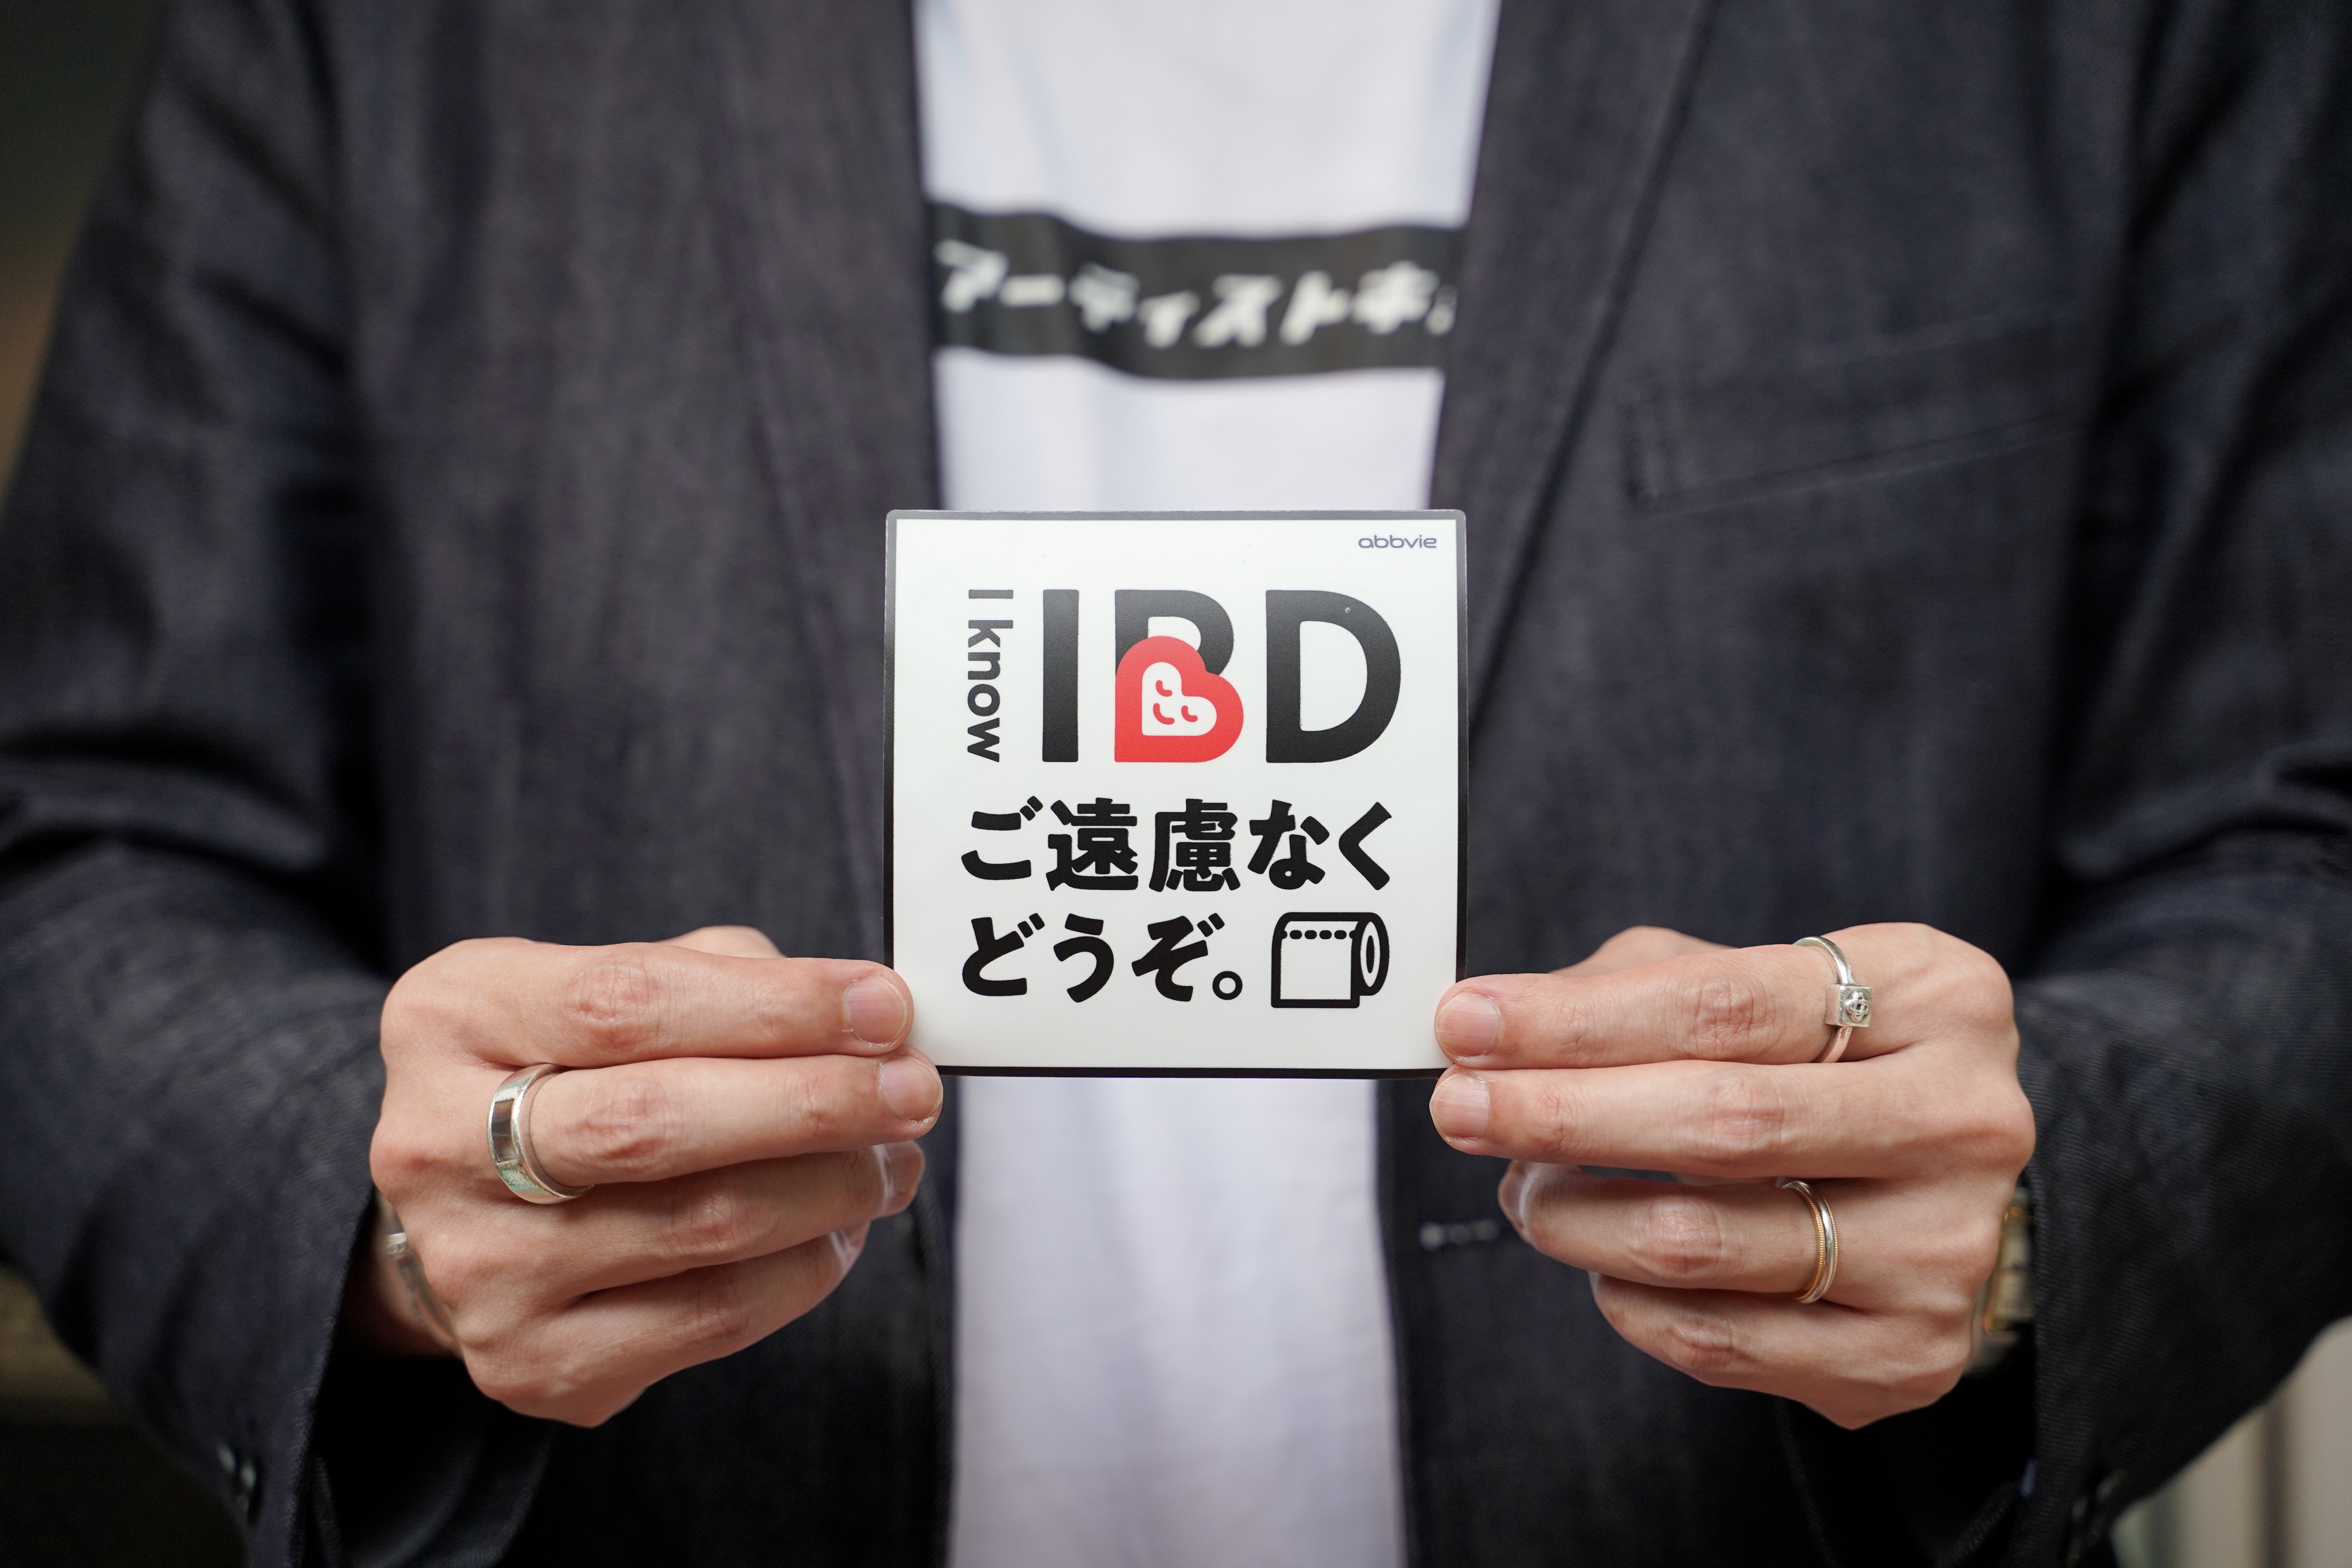 日本アーティスト協会、アッヴィの「I know IBD（アイノウアイビーディー）プロジェクト」に賛同。指定難病IBDの理解向上を支援。